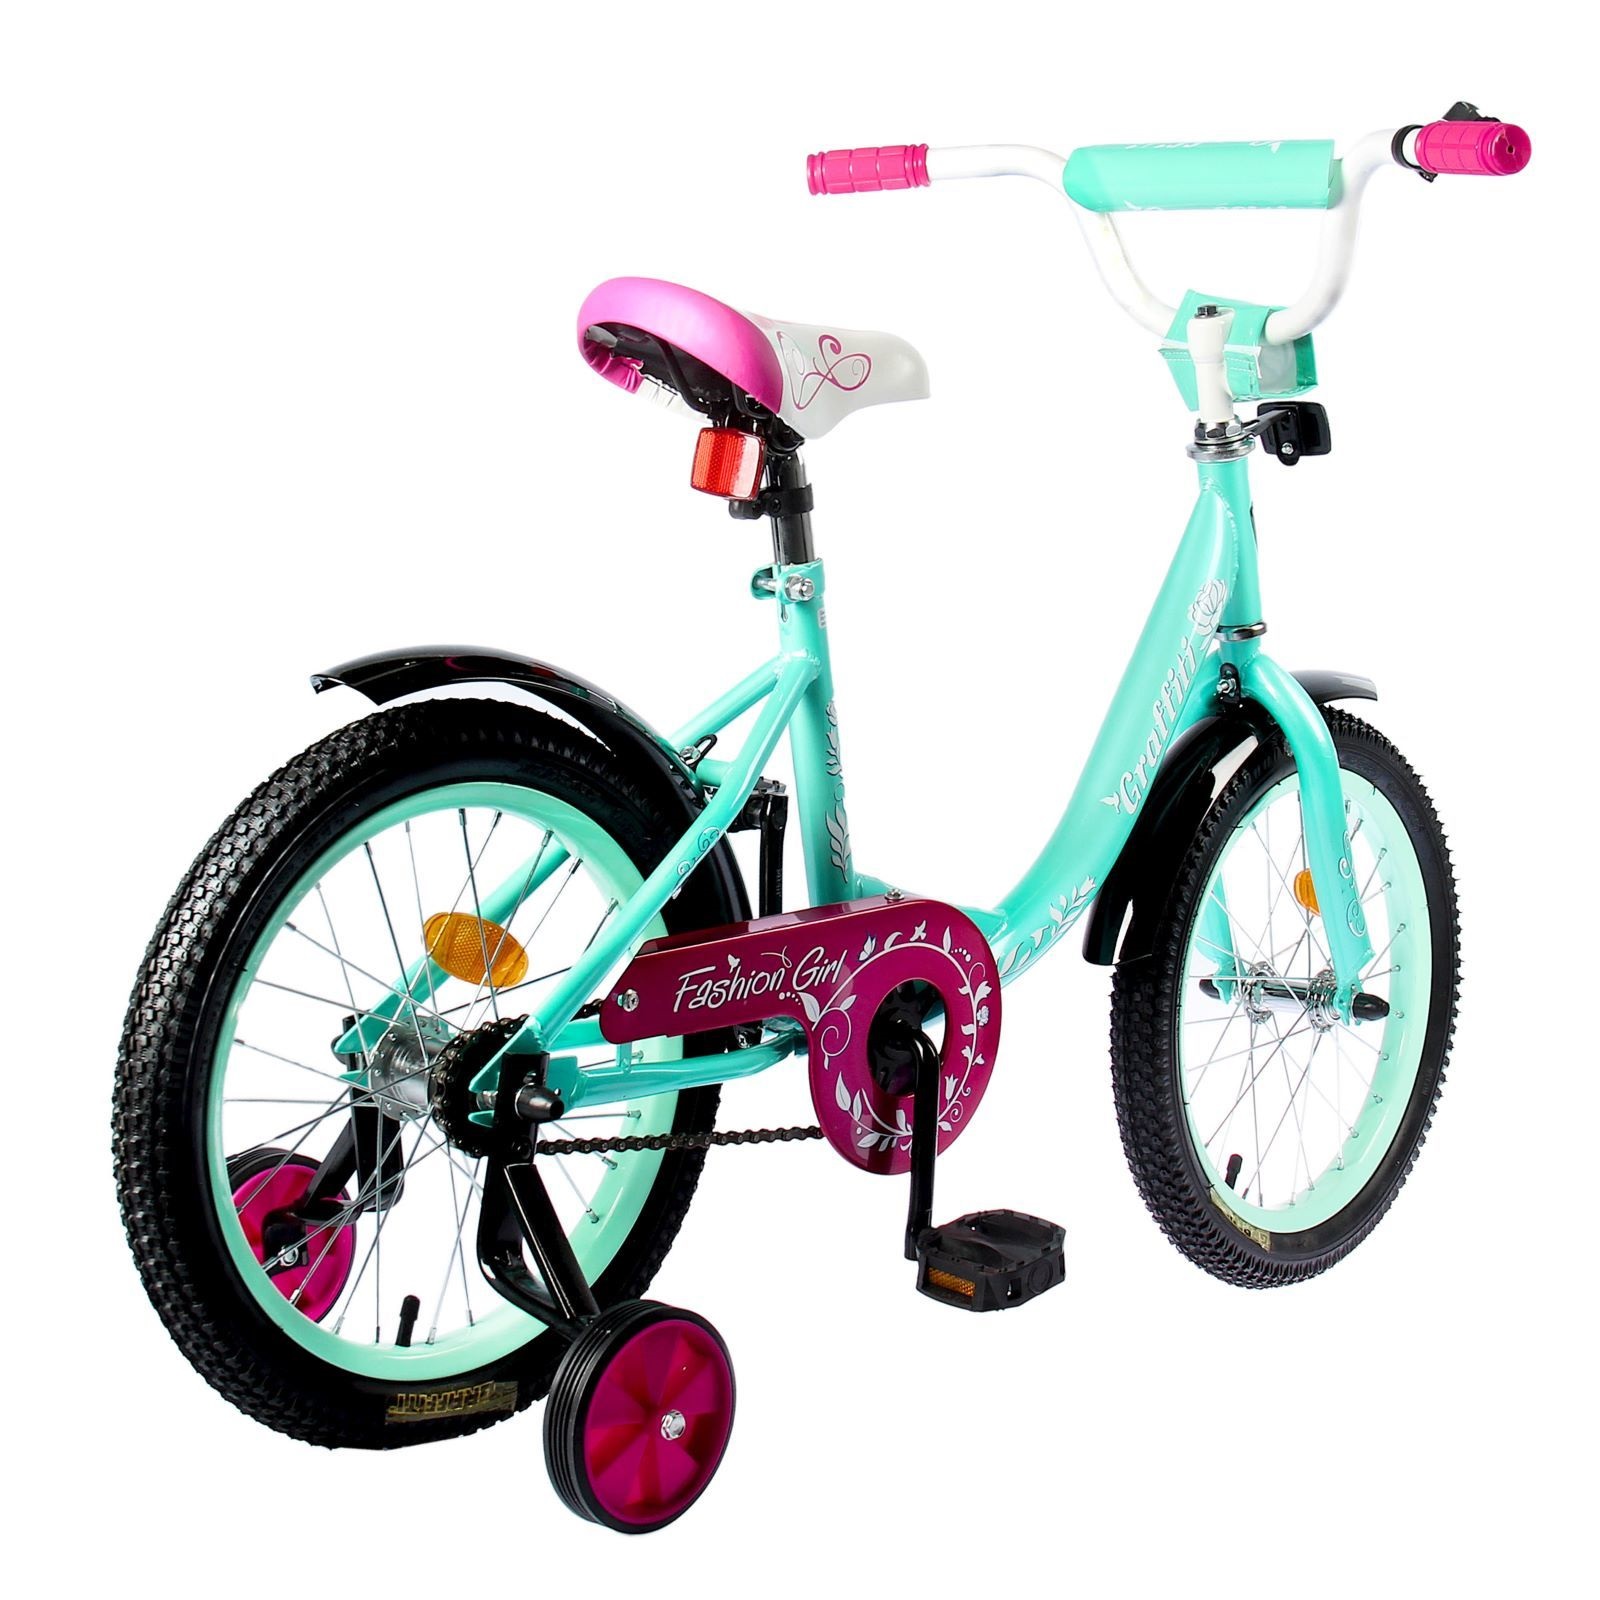 Детский велосипед от 5 лет для девочки. Велосипед Graffiti Fashion girl. Велосипед для девочки. Детский велосипед для девочки. Велосипед детский двухколесный.